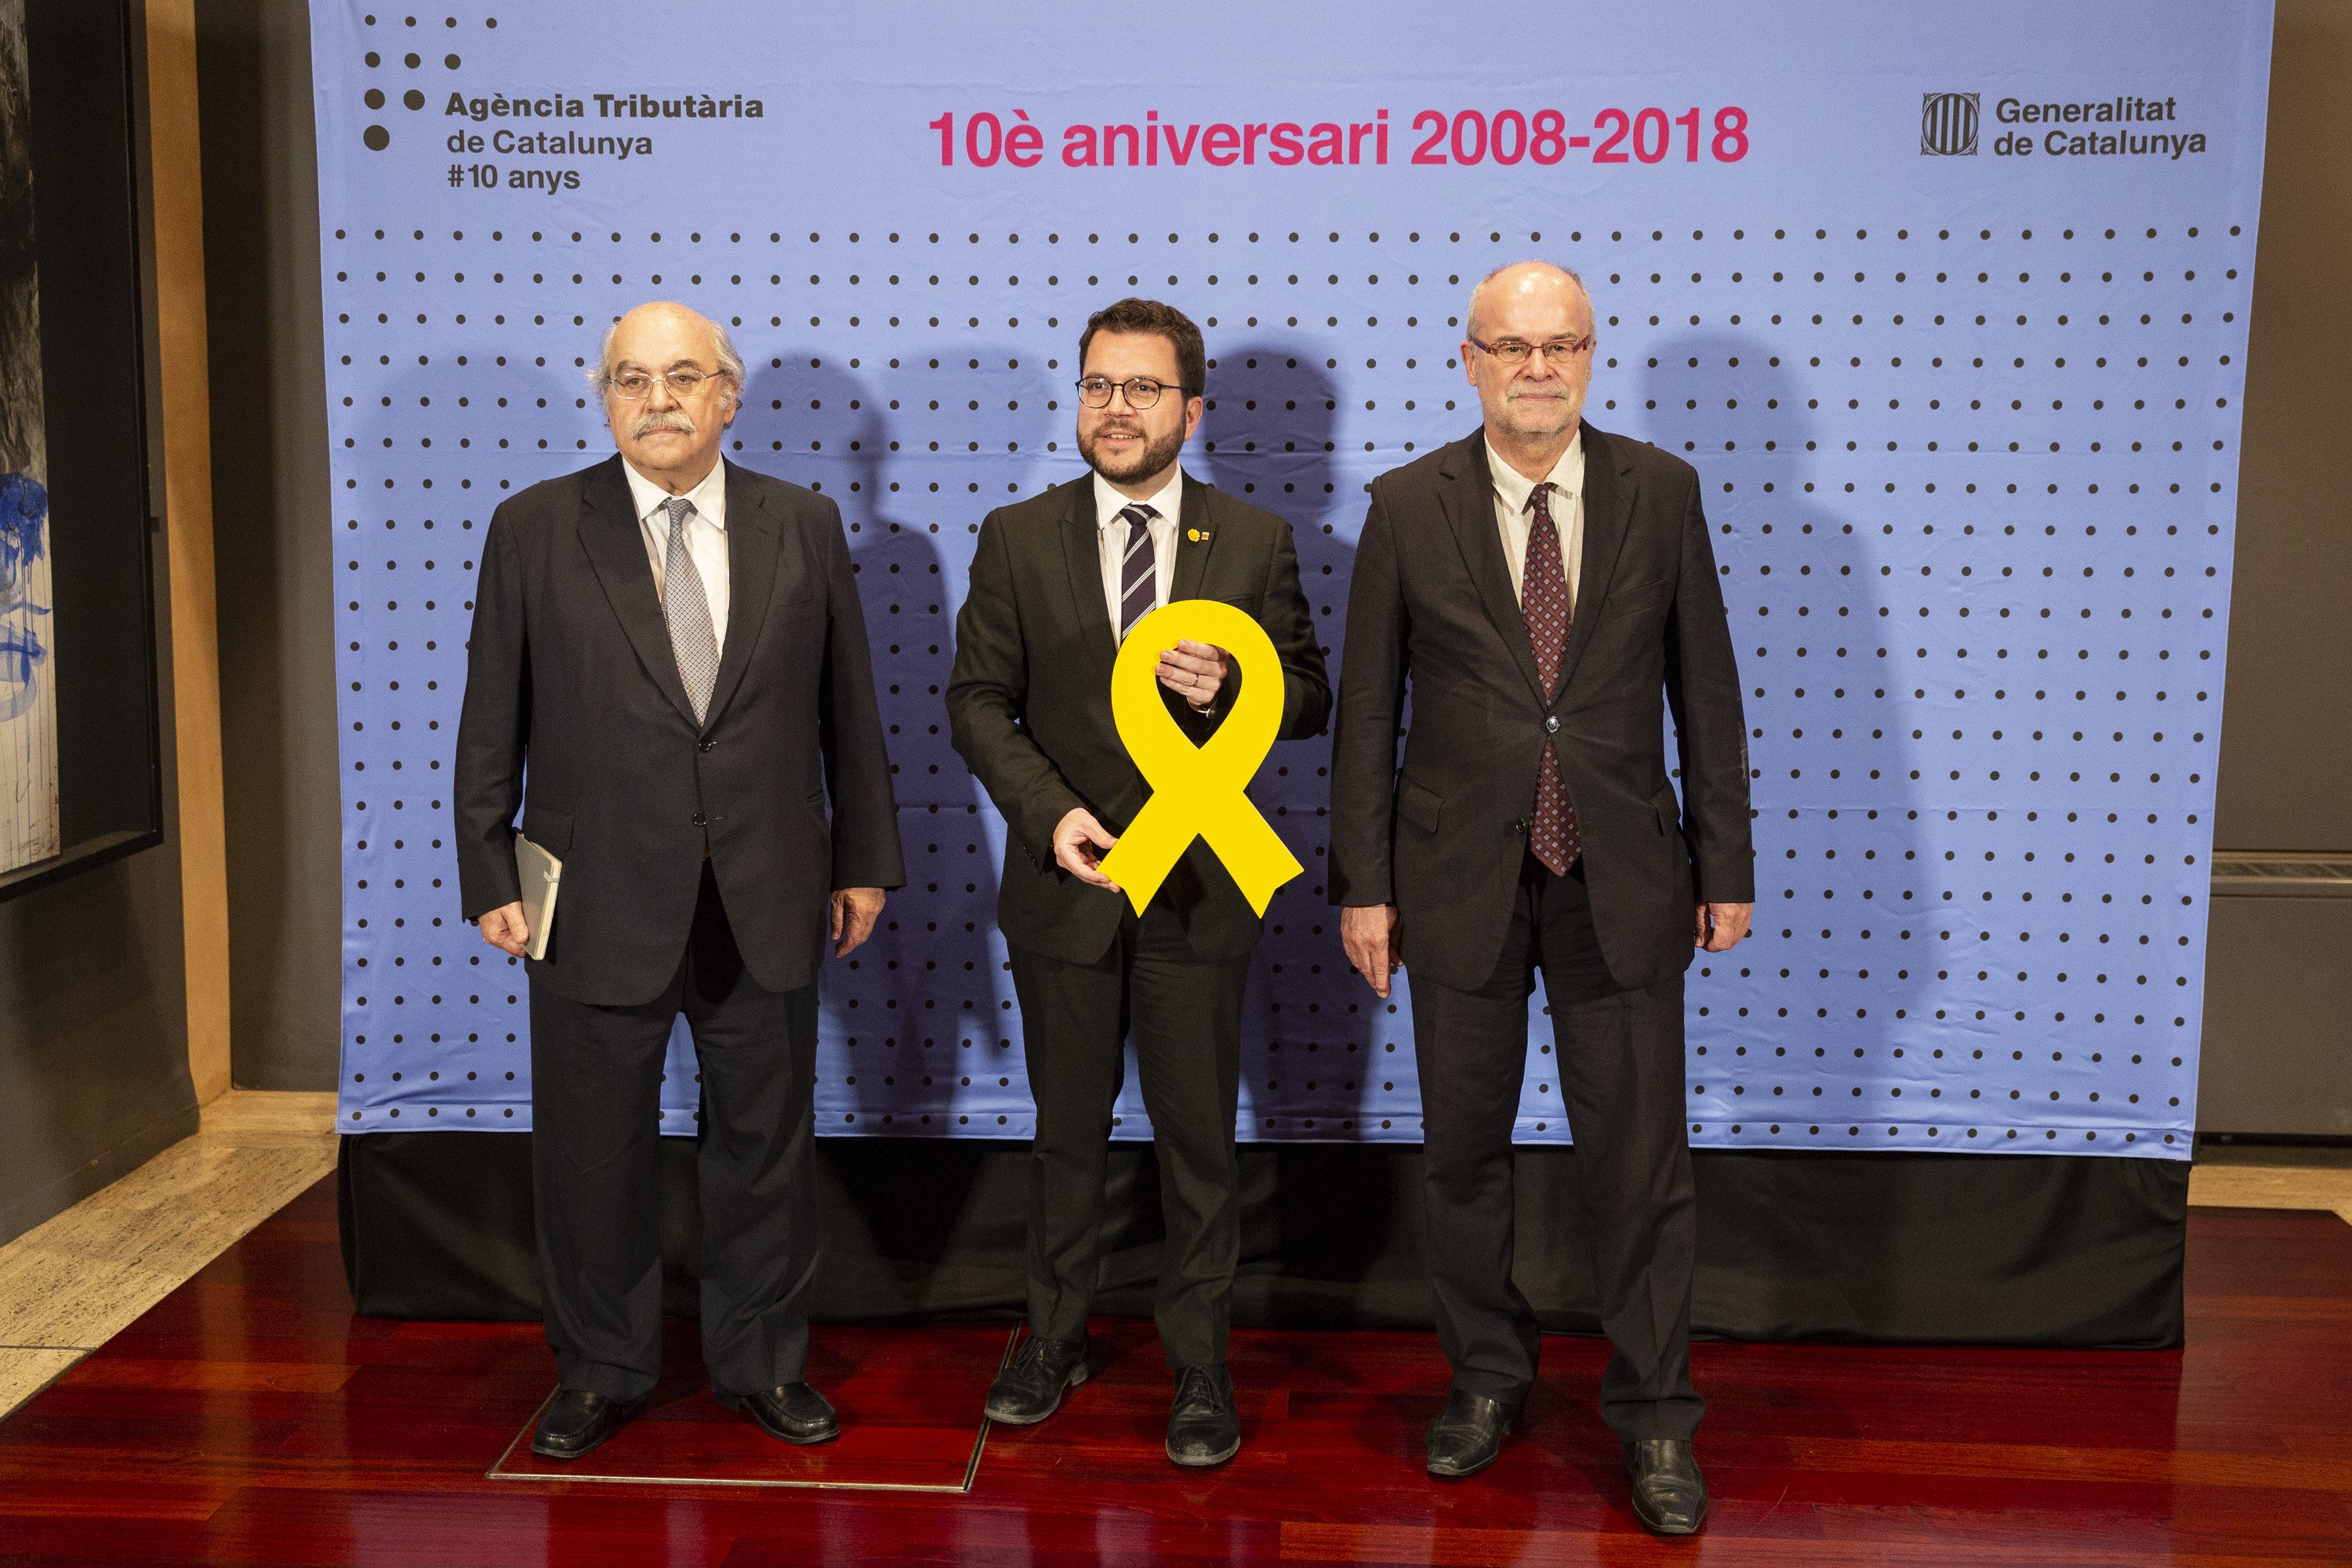 La Agencia Tributaria catalana celebra 10 años como referente de una administración